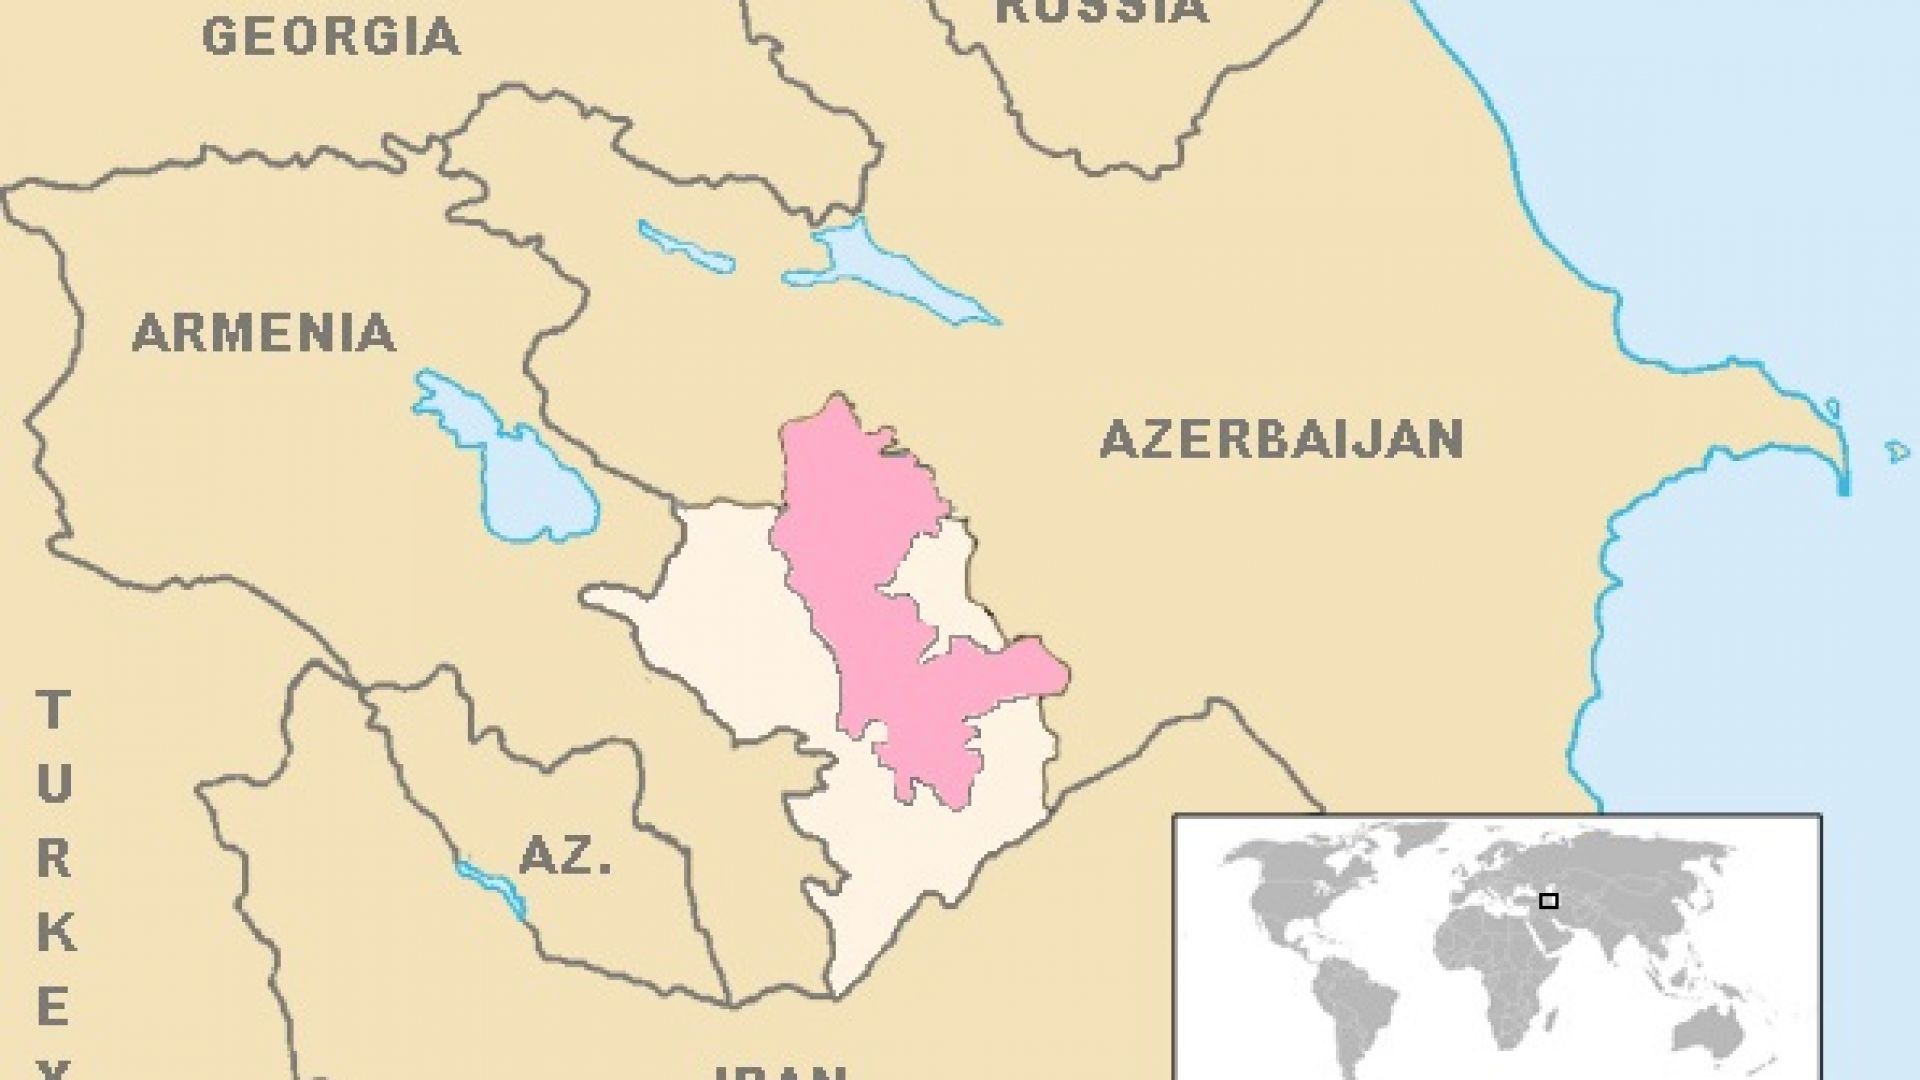 В розово е оригиналната територия на арменската автономия в Карабах, а в Бяло са завзетите от Азербайджан през 1994 година територии